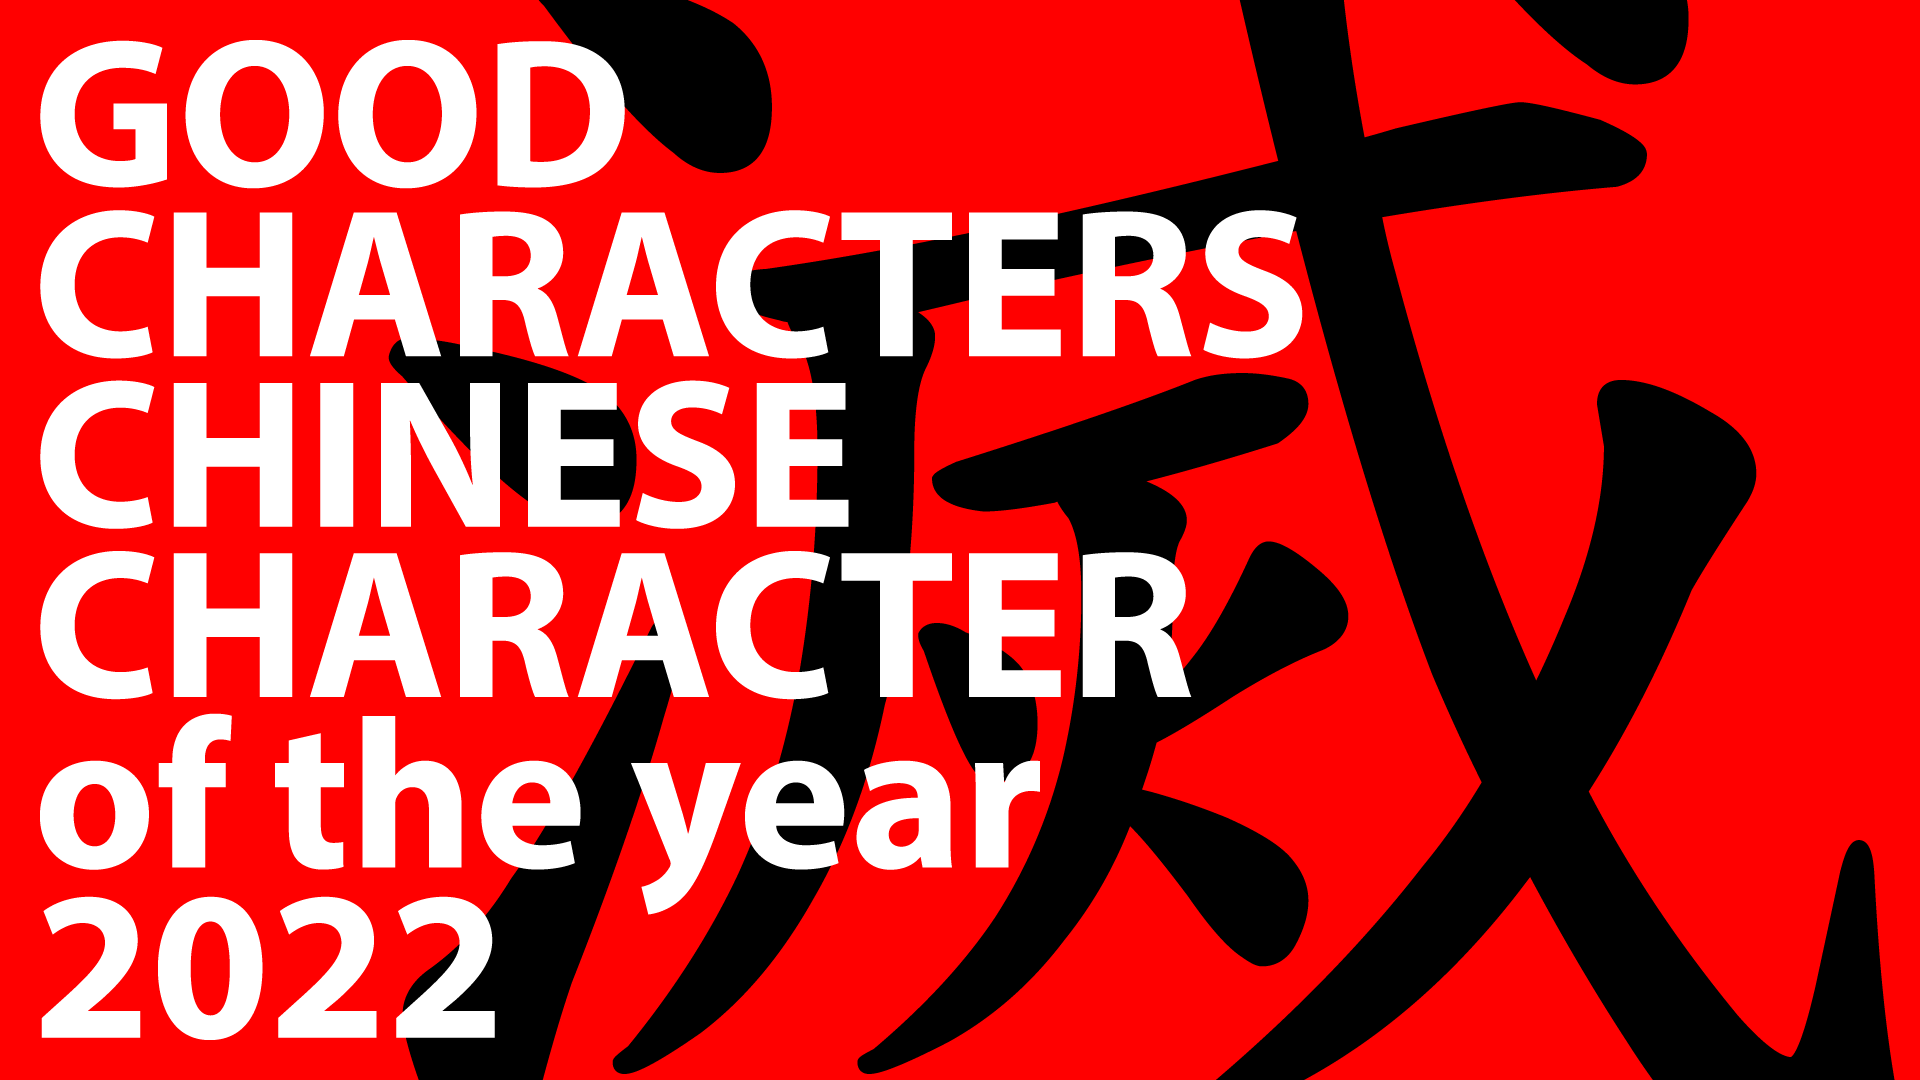 Cargar video: 滅 (miè, pronunciado mieh, simplificado: 灭) es el carácter chino de buenos caracteres del año 2022. Significa extinguir, exterminar o perecer. Es el mejor personaje para resumir los desafíos sin precedentes de este año.